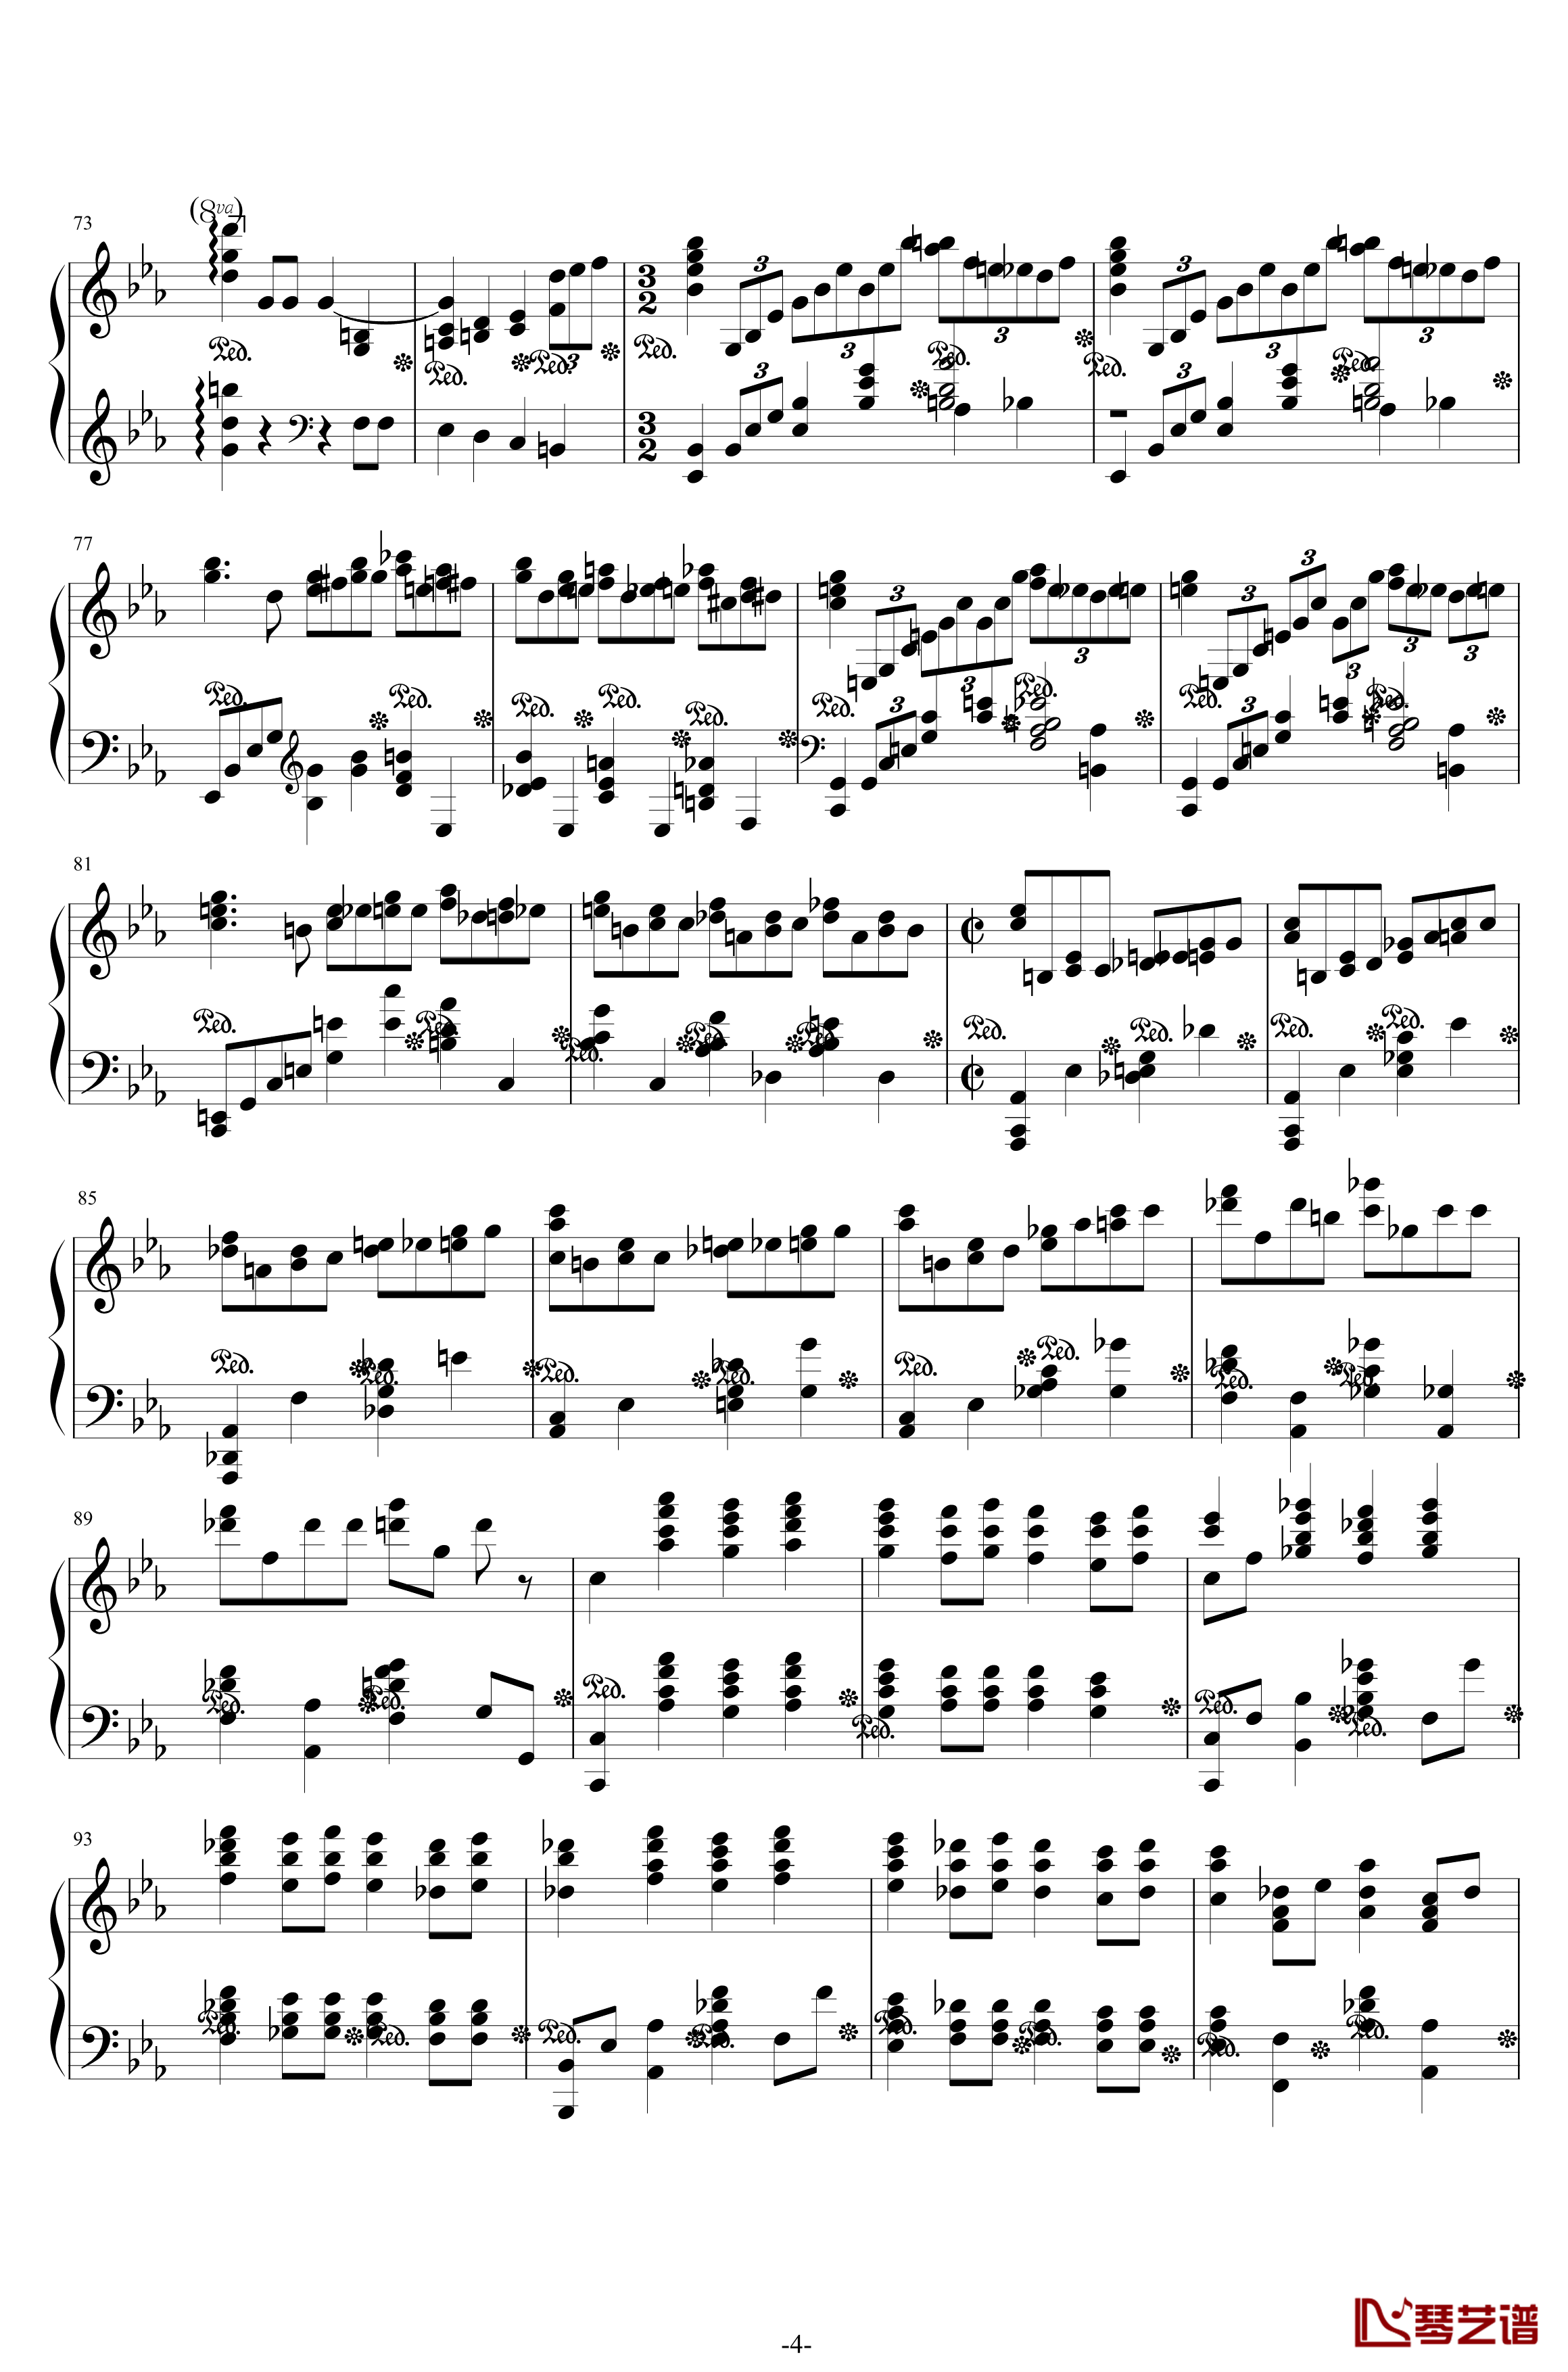 第二钢琴协奏曲钢琴谱-第三乐章独奏版-c小调-拉赫马尼若夫4